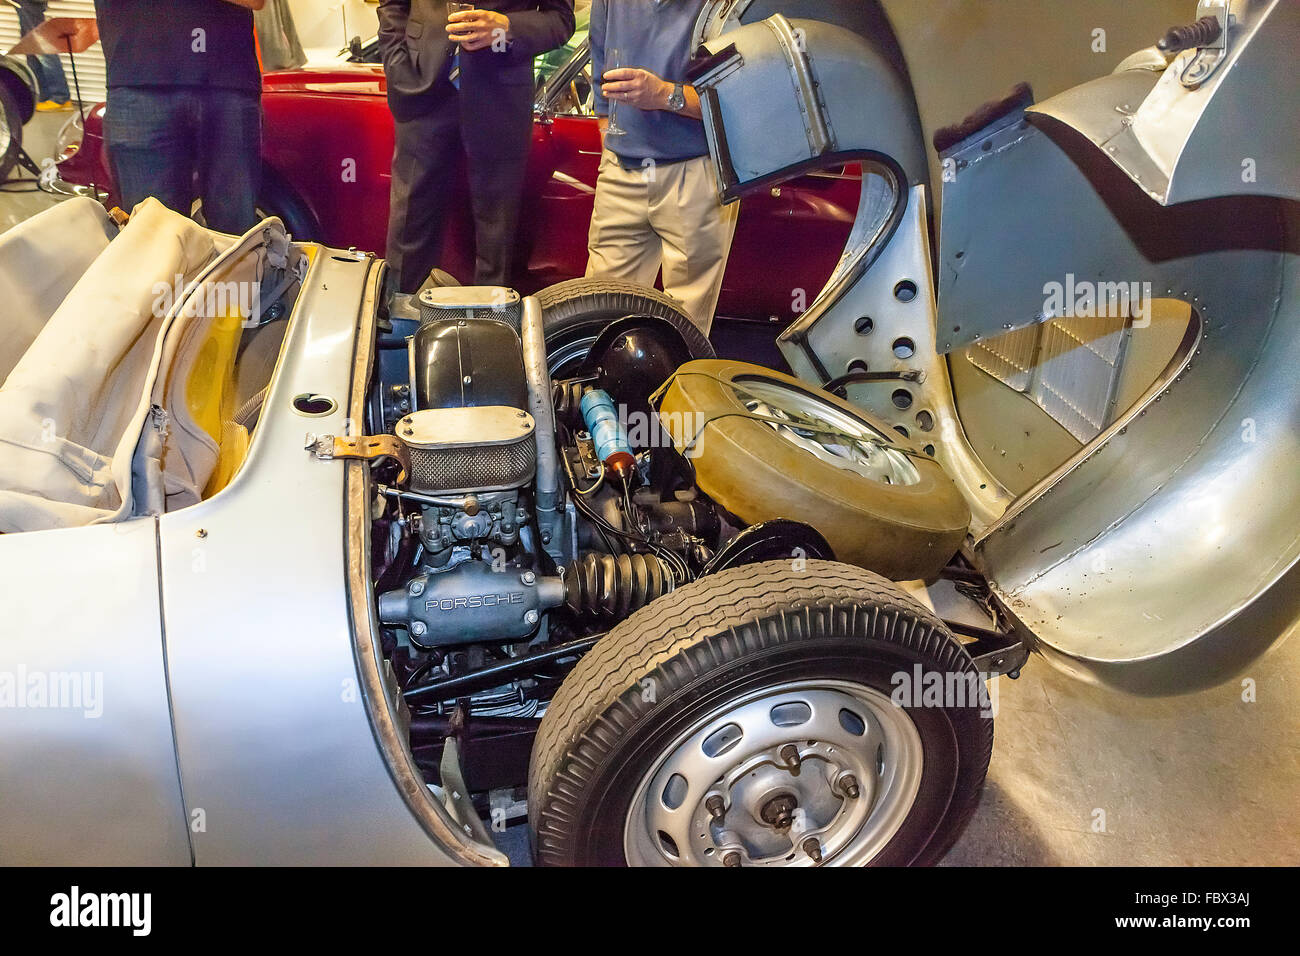 Le compartiment moteur de la 1955 Porsche 550 RSK similaire à la voiture que James Dean s'est écrasé en 1955 Banque D'Images